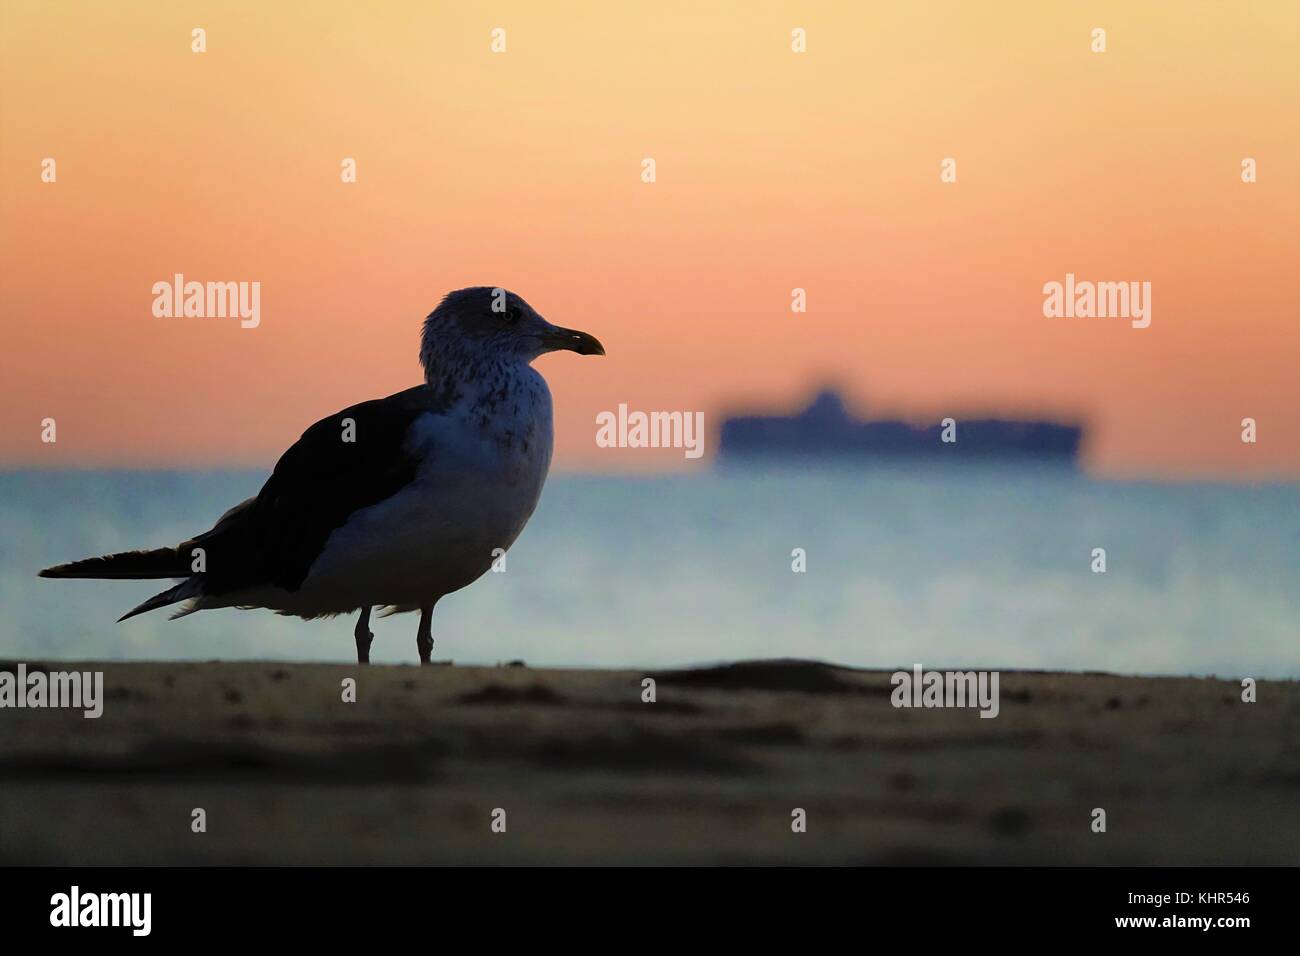 Seagull on beach at sunset Stock Photo